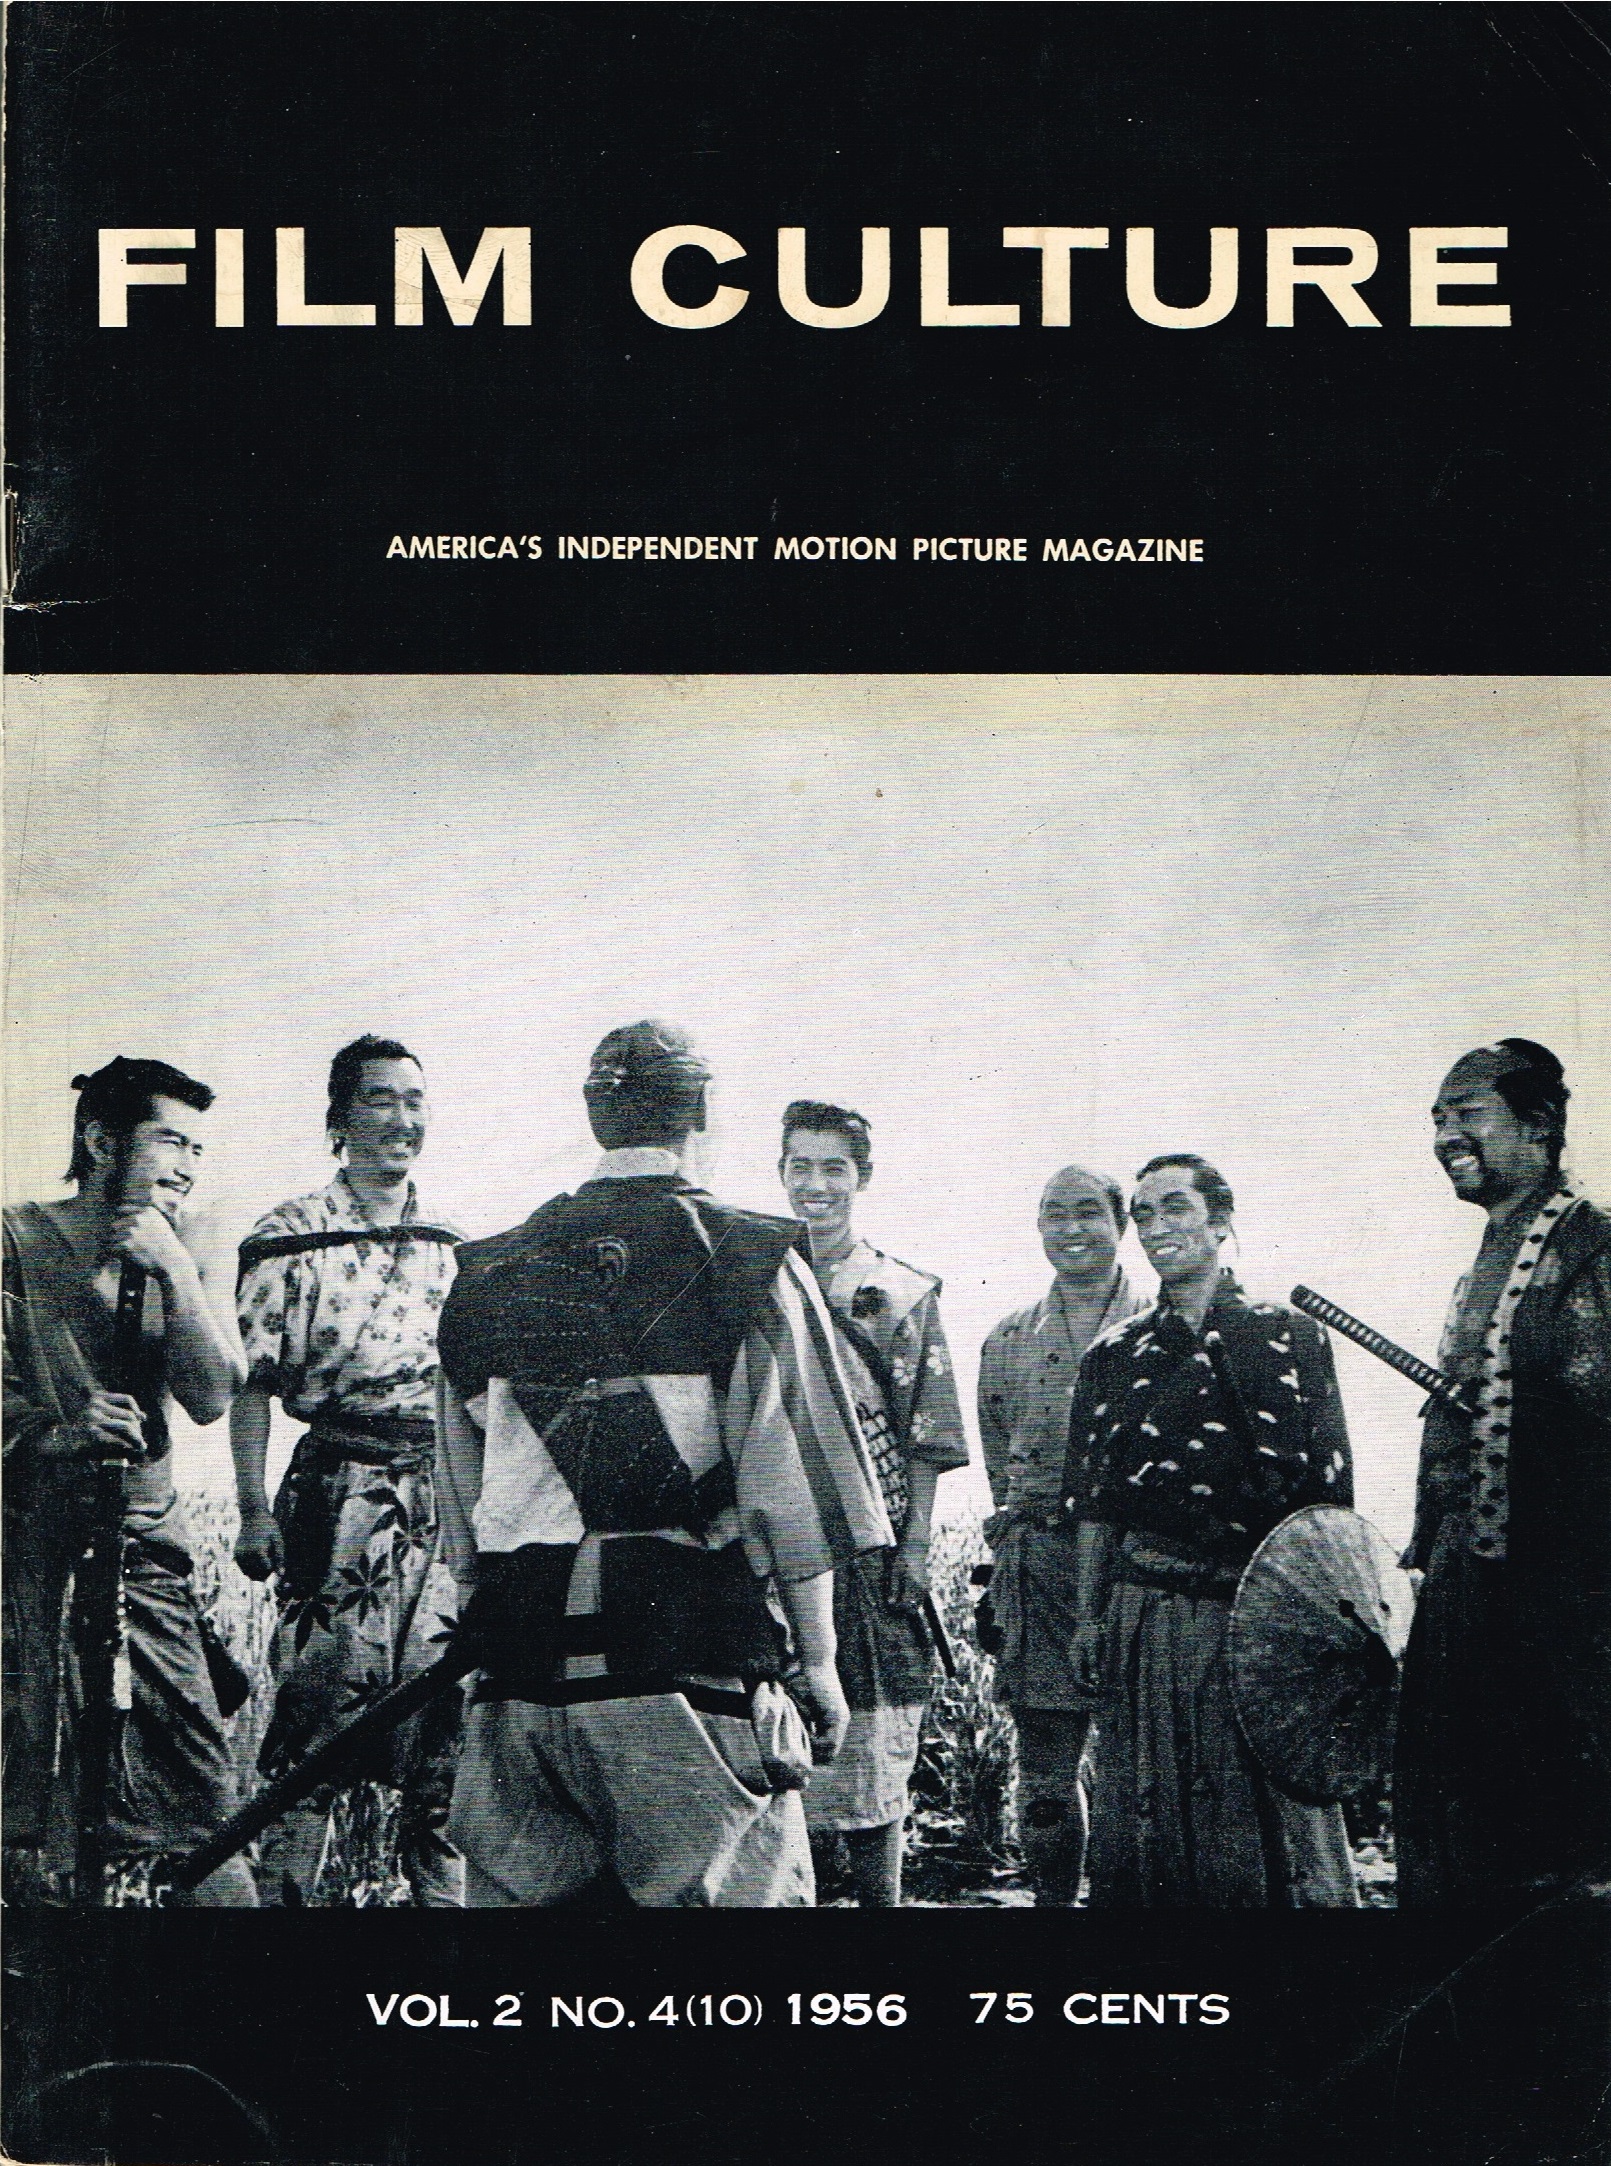 (FILM CULTURE). Mekas, Jonas, Edouard de Laurot, George N. Fenin & Adolfas Mekas, Editors - FILM CULTURE VOLUME 2, NUMBER 4 (ISSUE 10) 1956